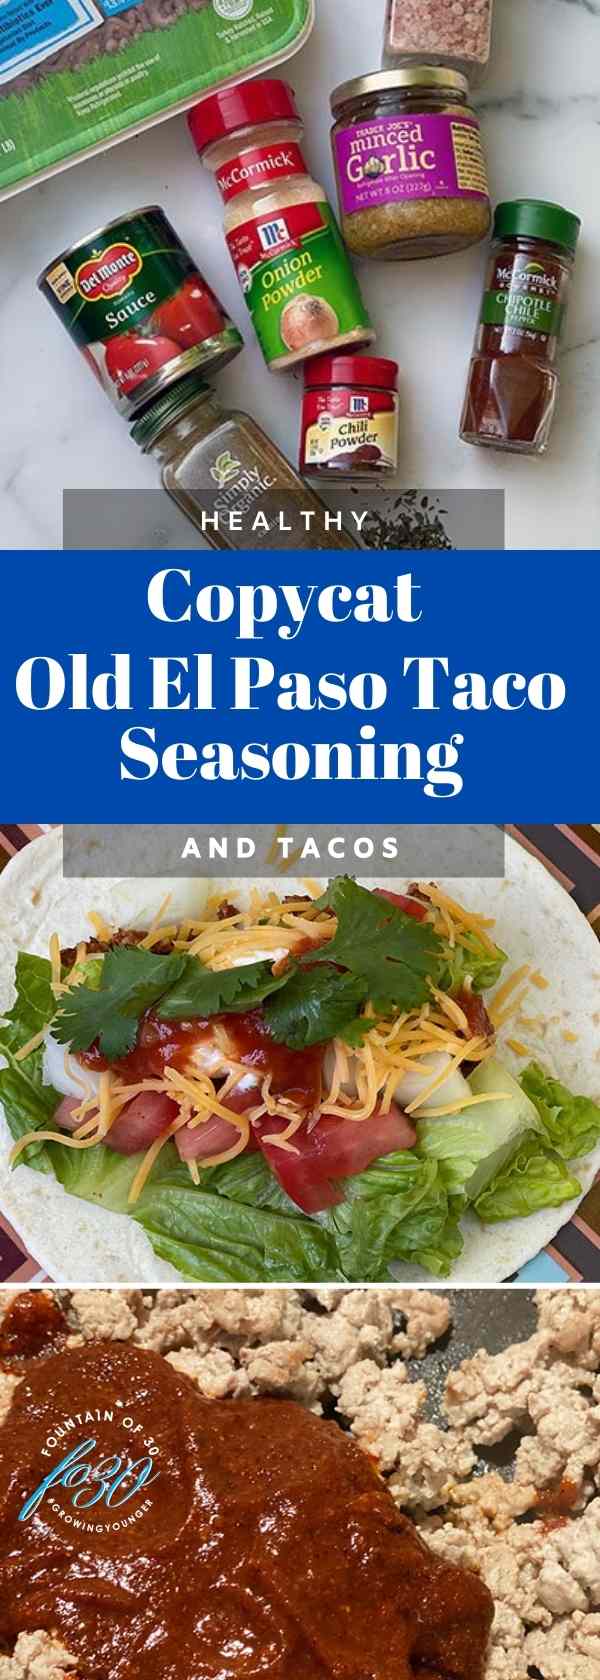 copycat old el paso taco seasoning mix fountainof30